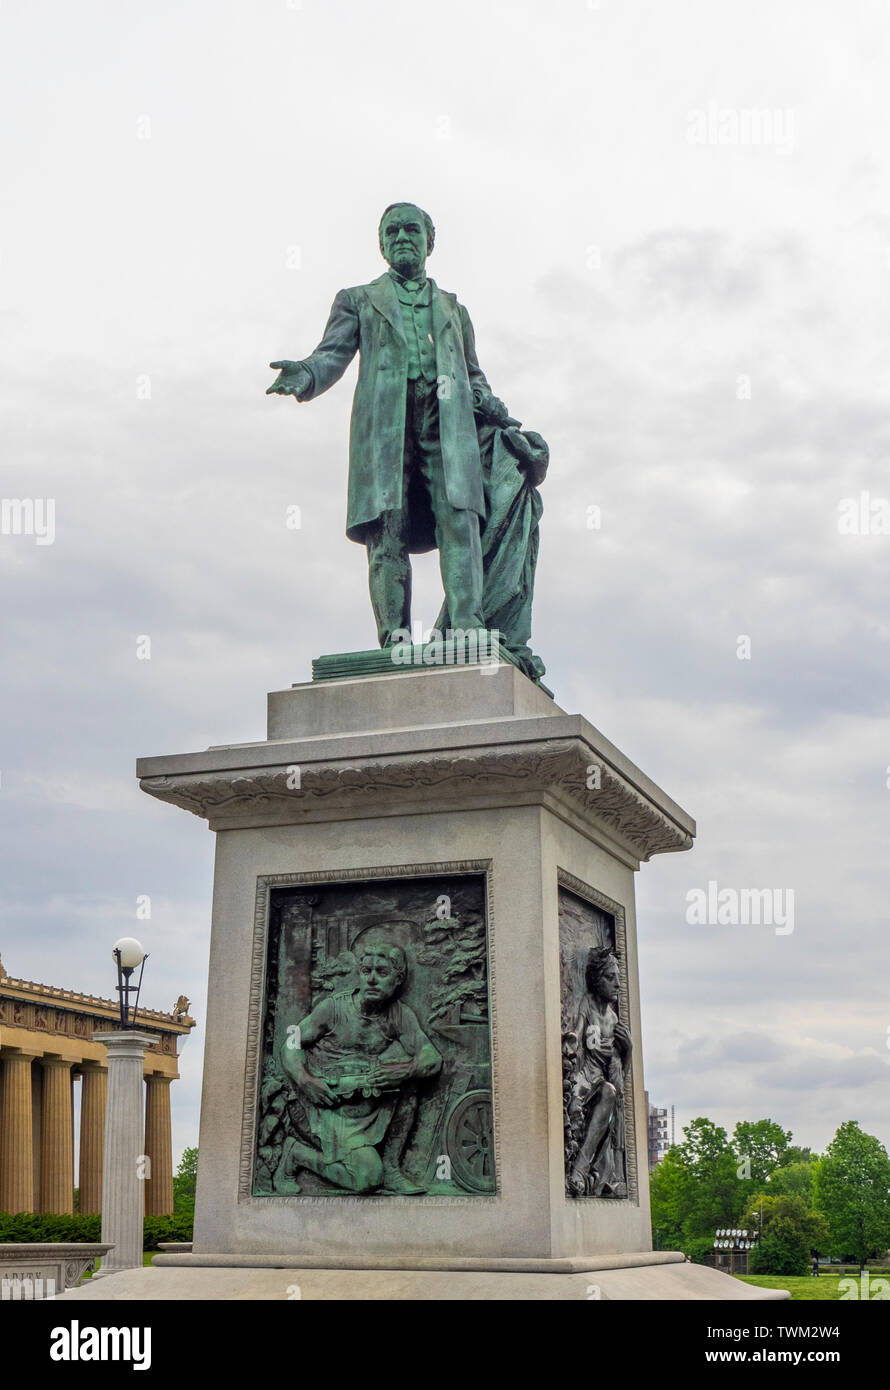 Monumento estatua de bronce de John W Thomas en el Parque Centenario de Nashville, Tennessee, EE.UU.. Foto de stock